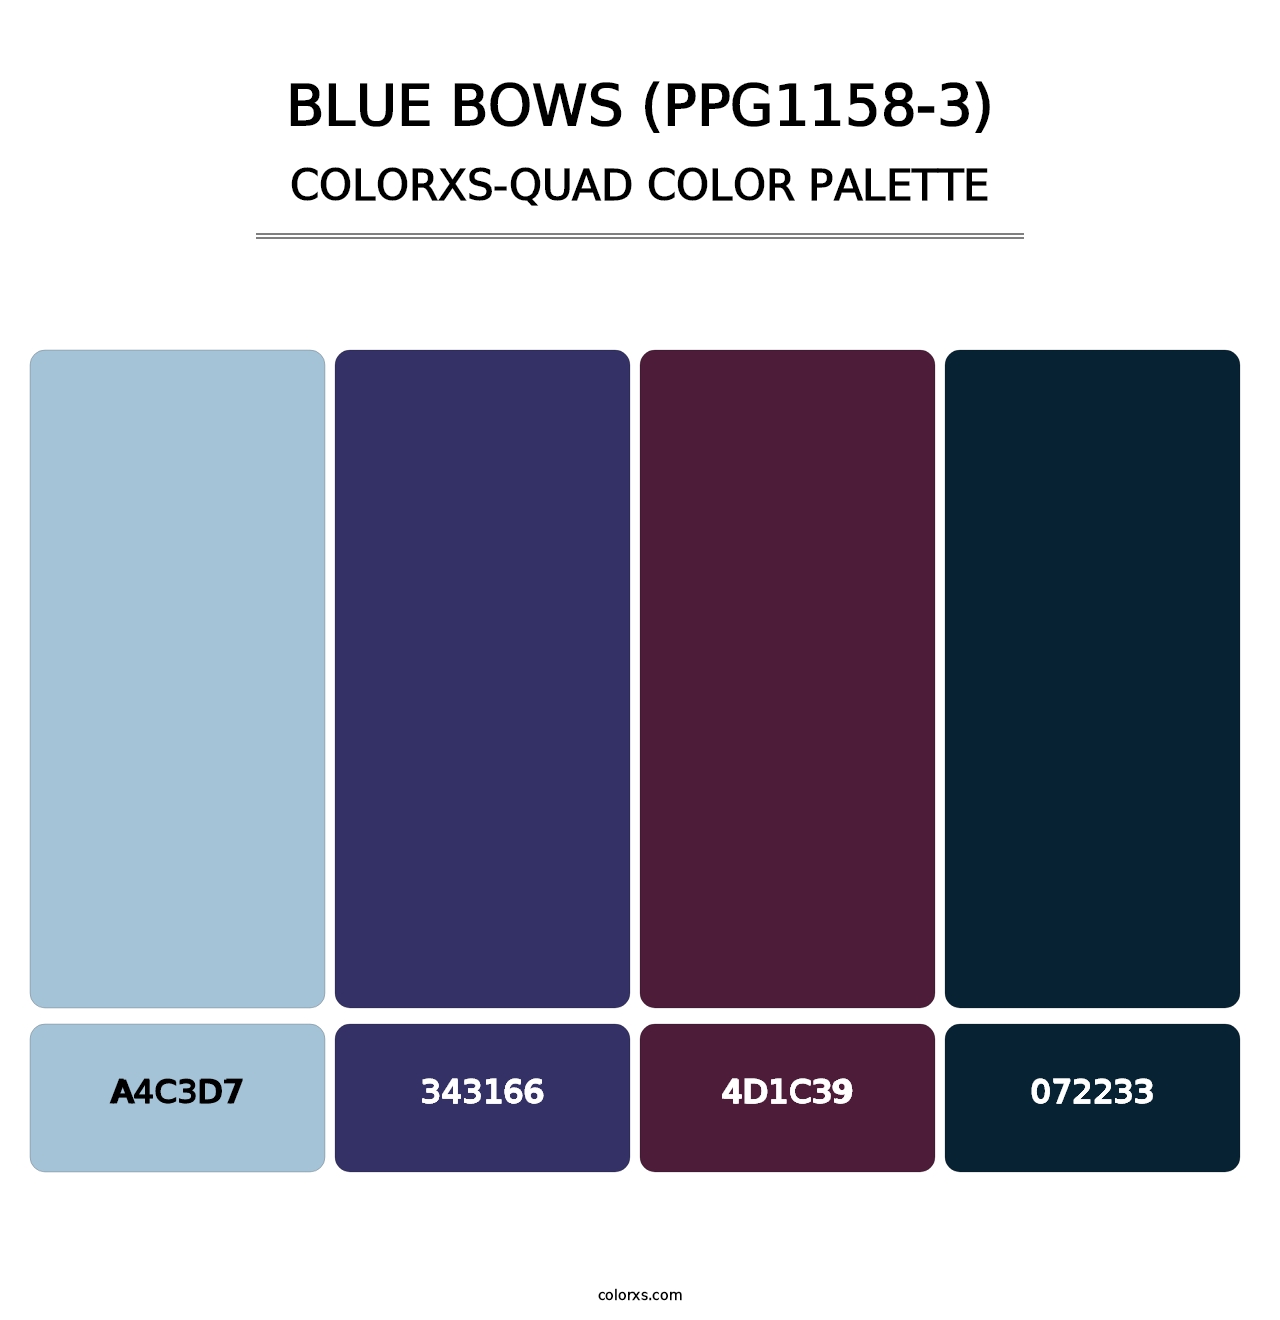 Blue Bows (PPG1158-3) - Colorxs Quad Palette